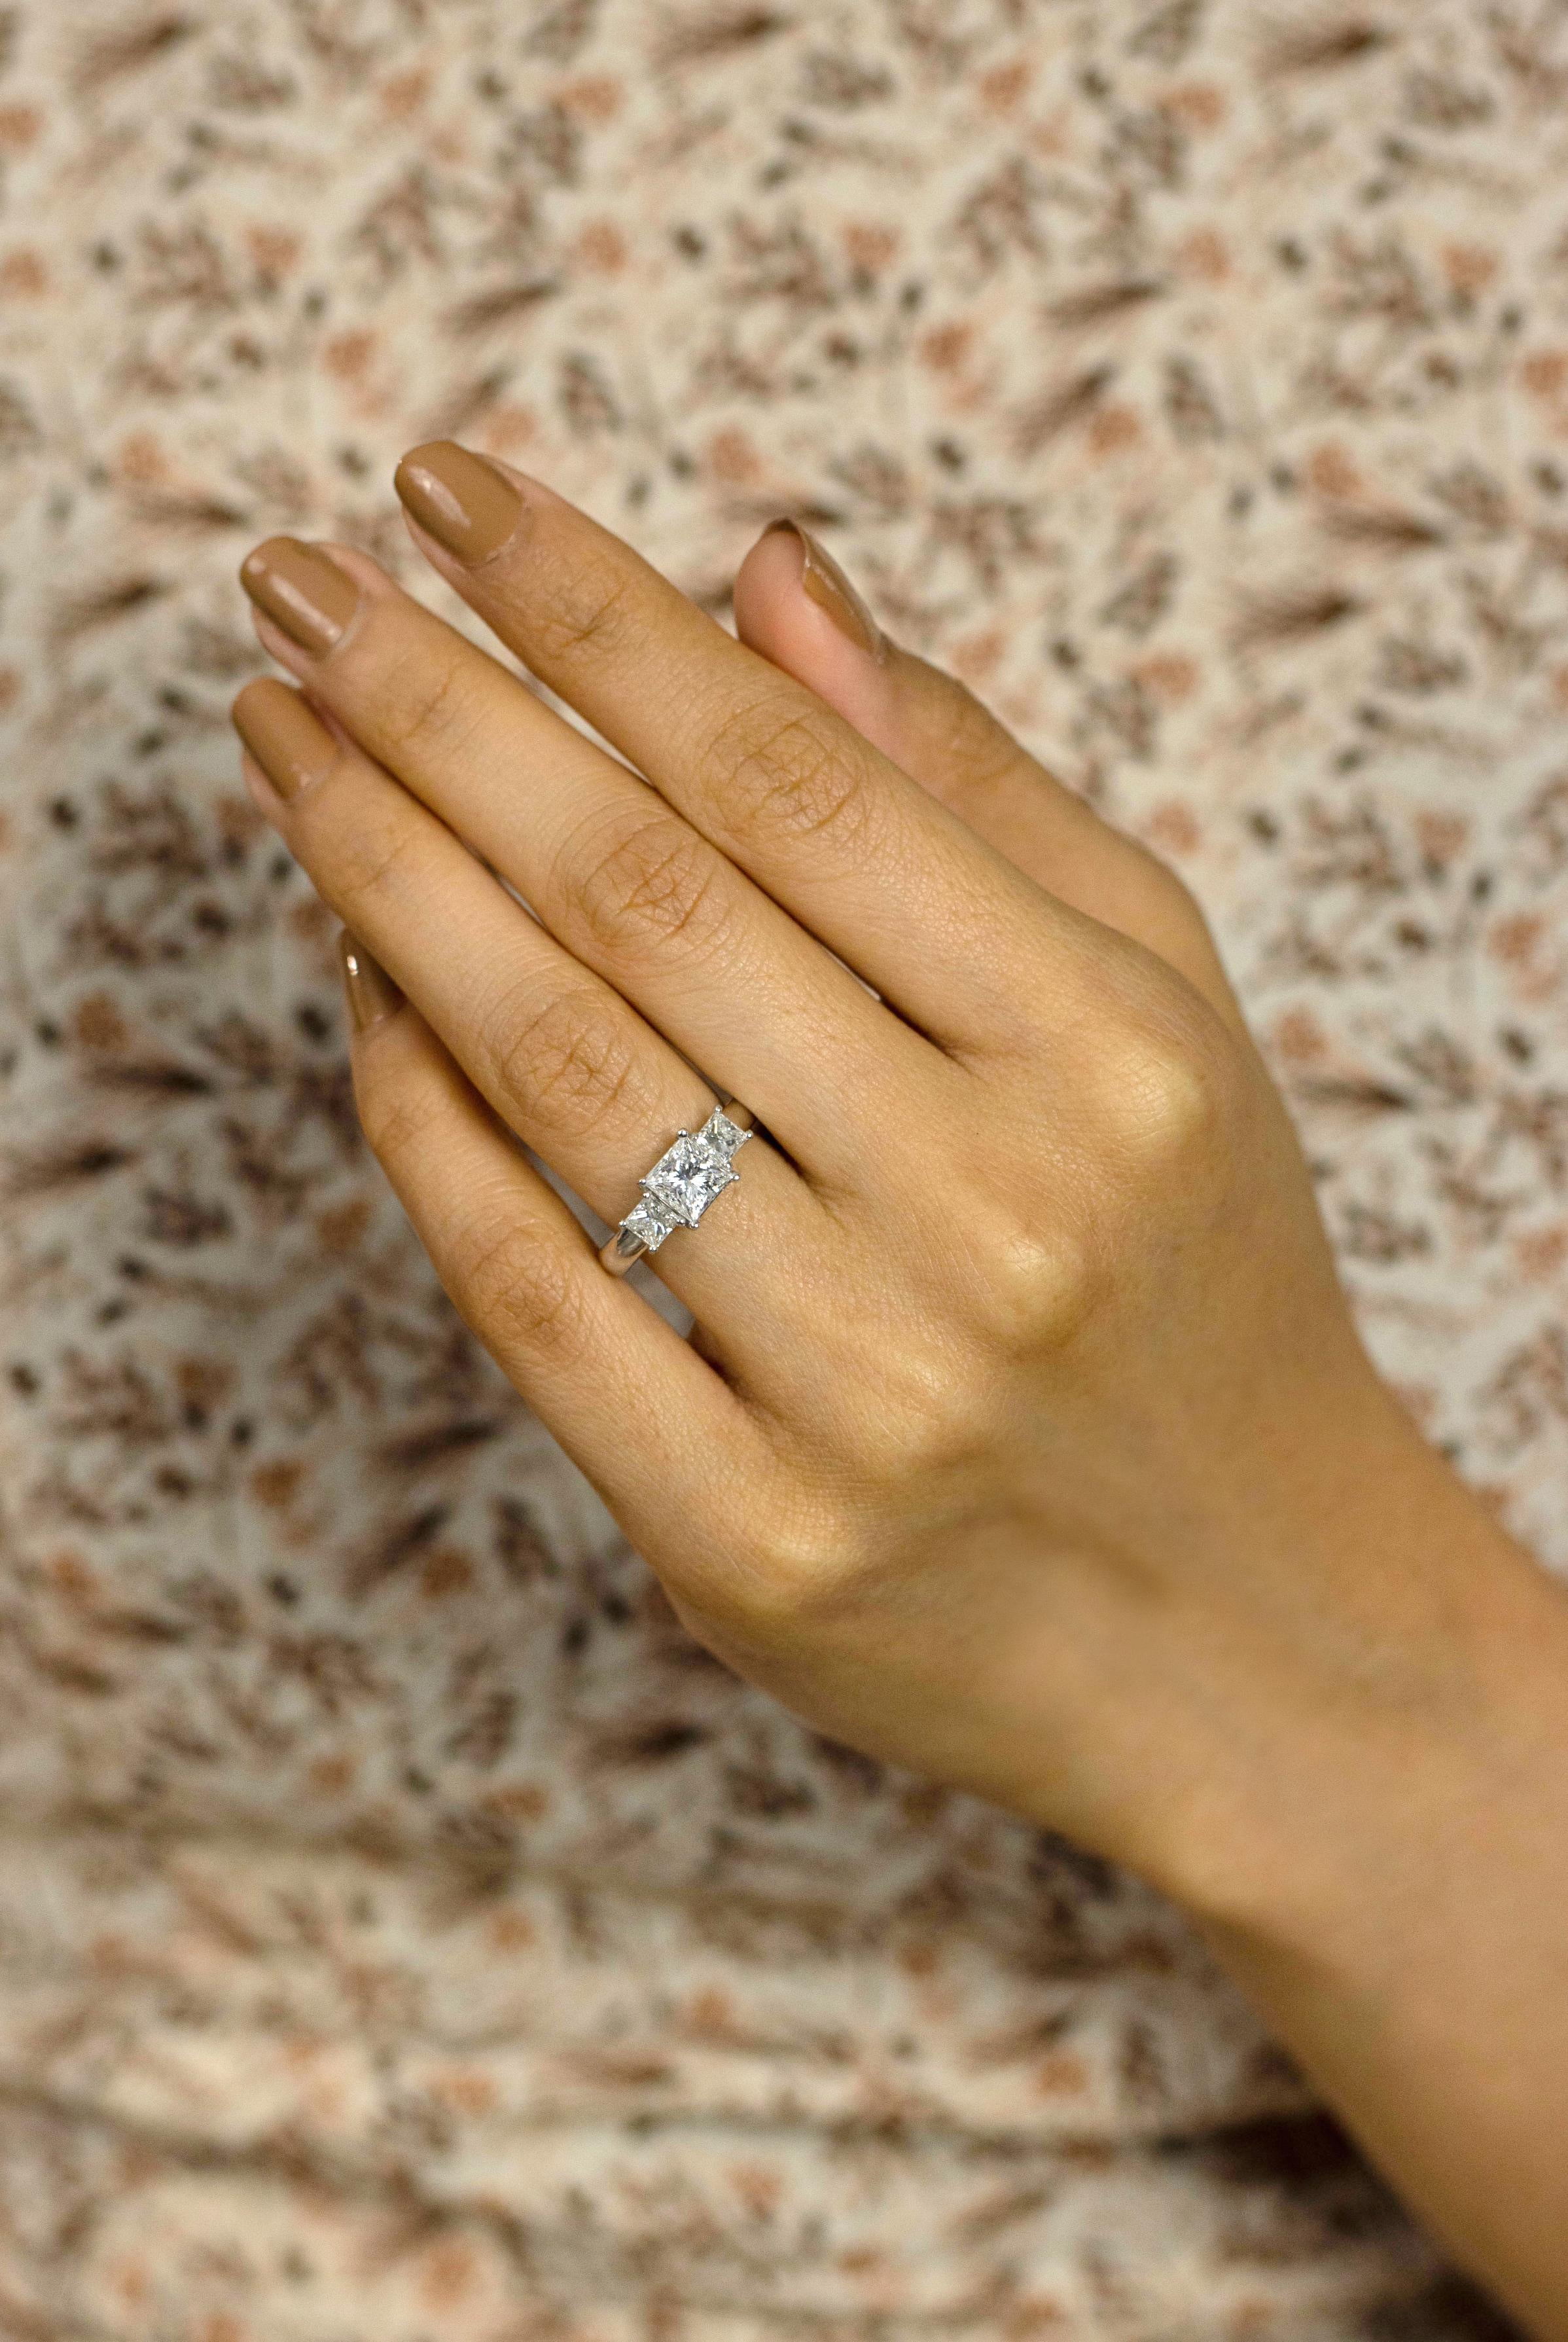 Dieser luxuriöse Verlobungsring besteht aus einem 1,04 Karat schweren Diamanten im Prinzessschliff in der Mitte, flankiert von Diamanten im Prinzessschliff auf jeder Seite. Die Akzentdiamanten wiegen insgesamt 1.00 Karat. Jeder Diamant ist in einem